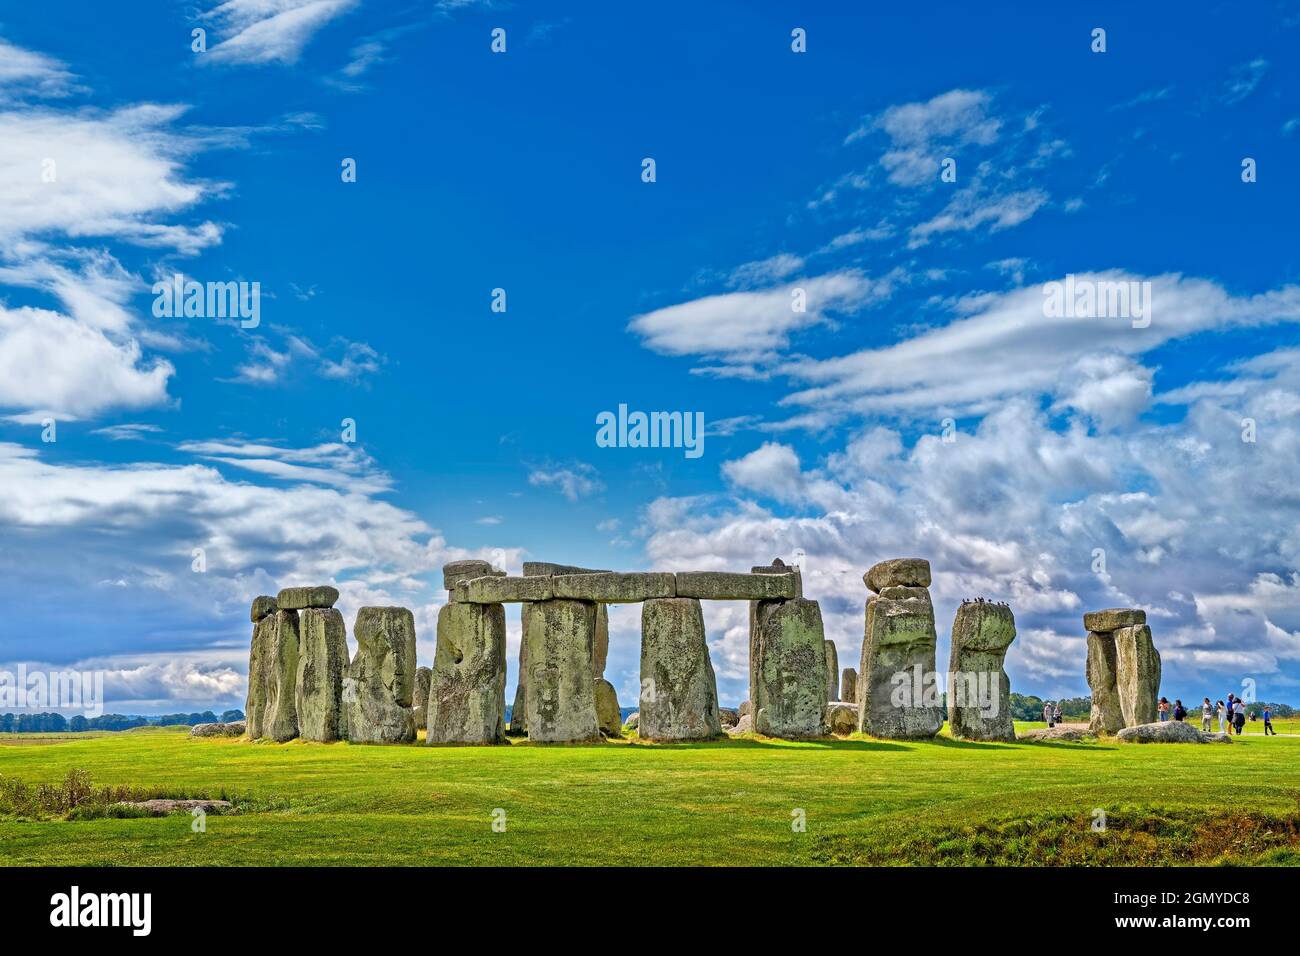 Stonehenge Stone Circle on Salisbury Plain in Wiltshire, England. Stock Photo